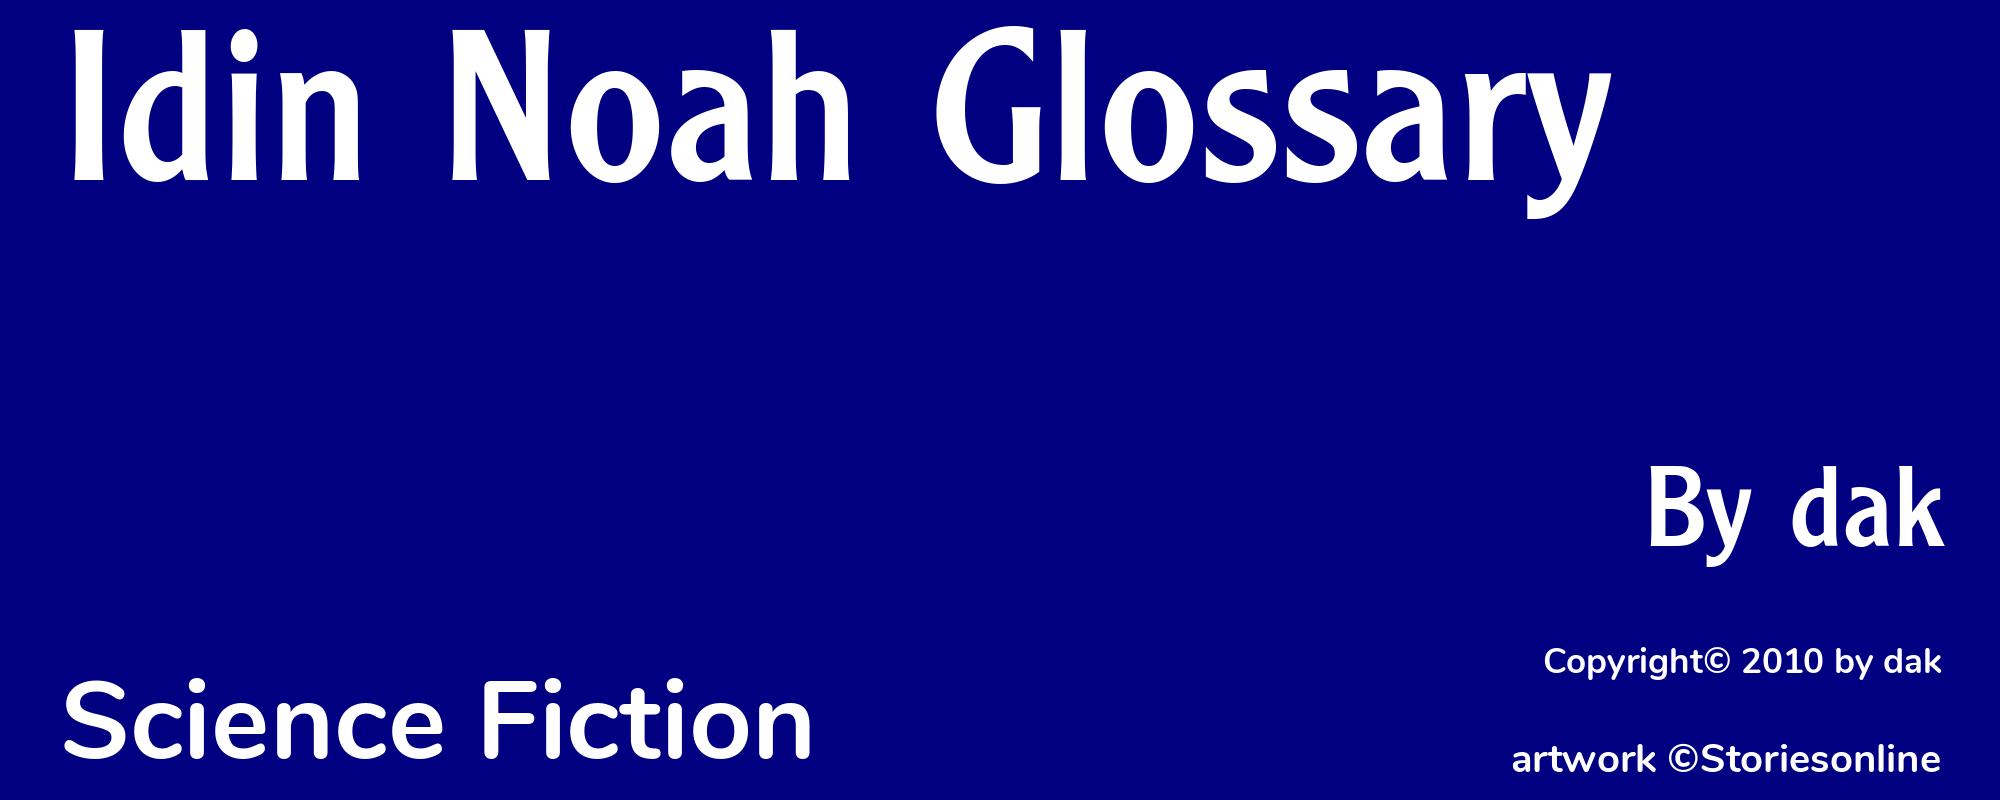 Idin Noah Glossary - Cover